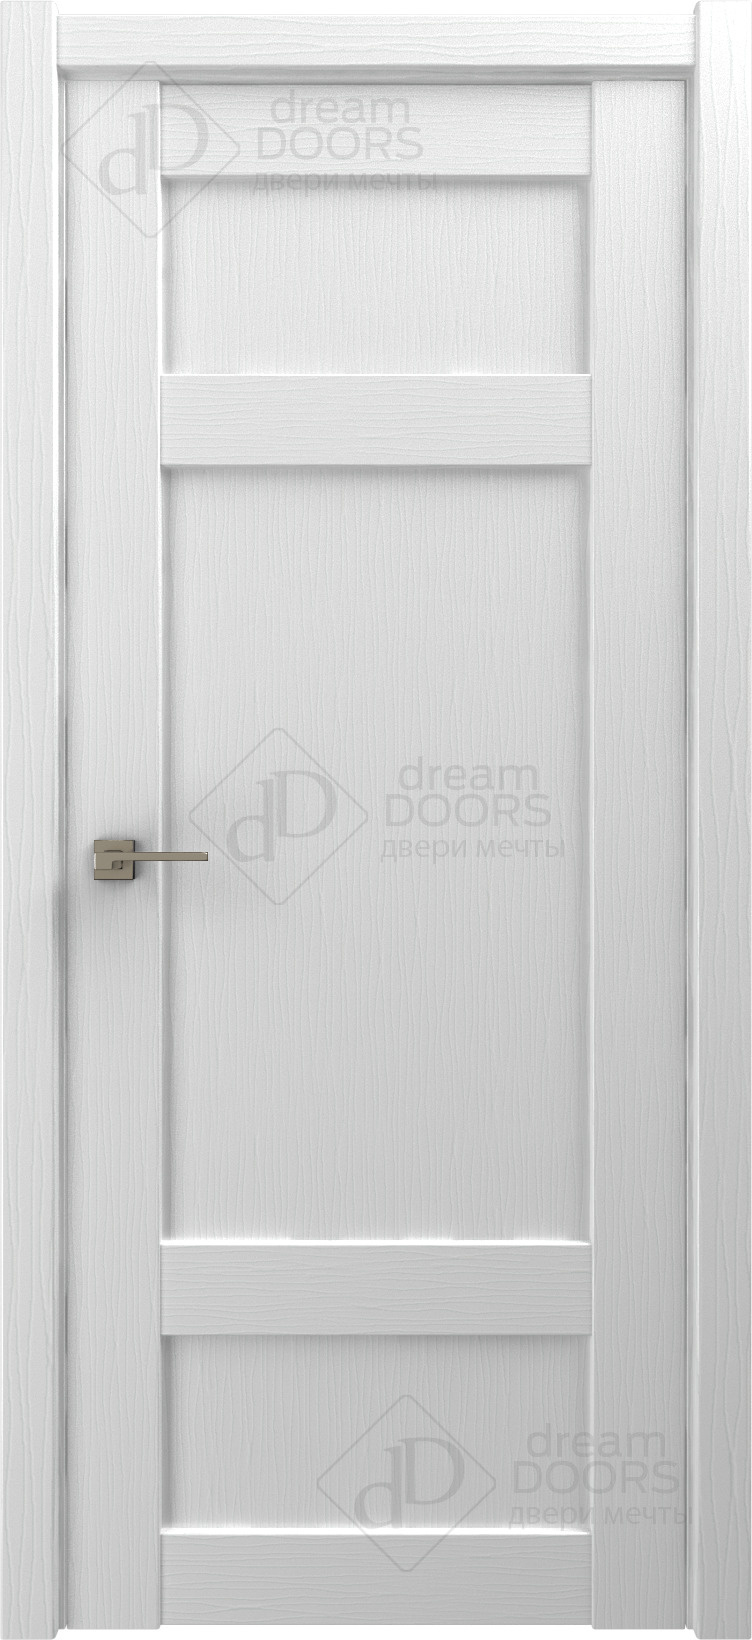 Dream Doors Межкомнатная дверь G22, арт. 18249 - фото №1